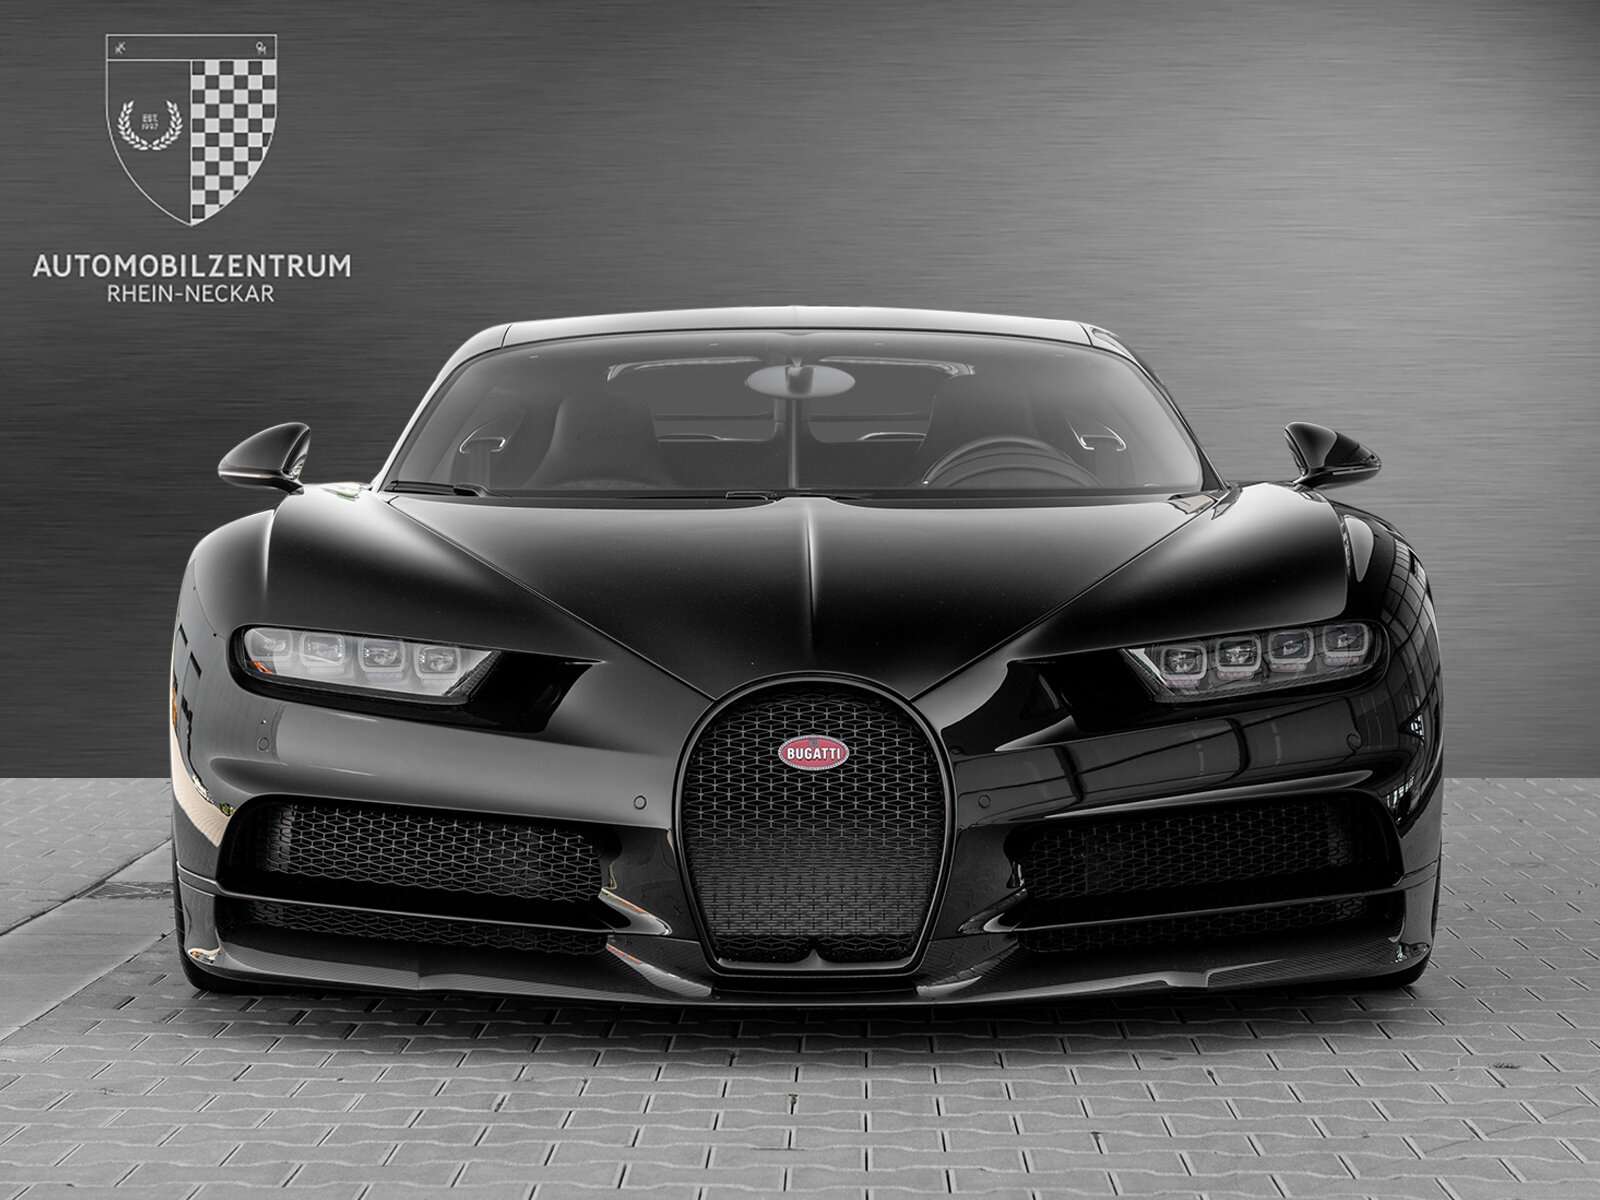 Bugatti Chiron Coupe in Black used in Viernheim for € 3,990,000.-